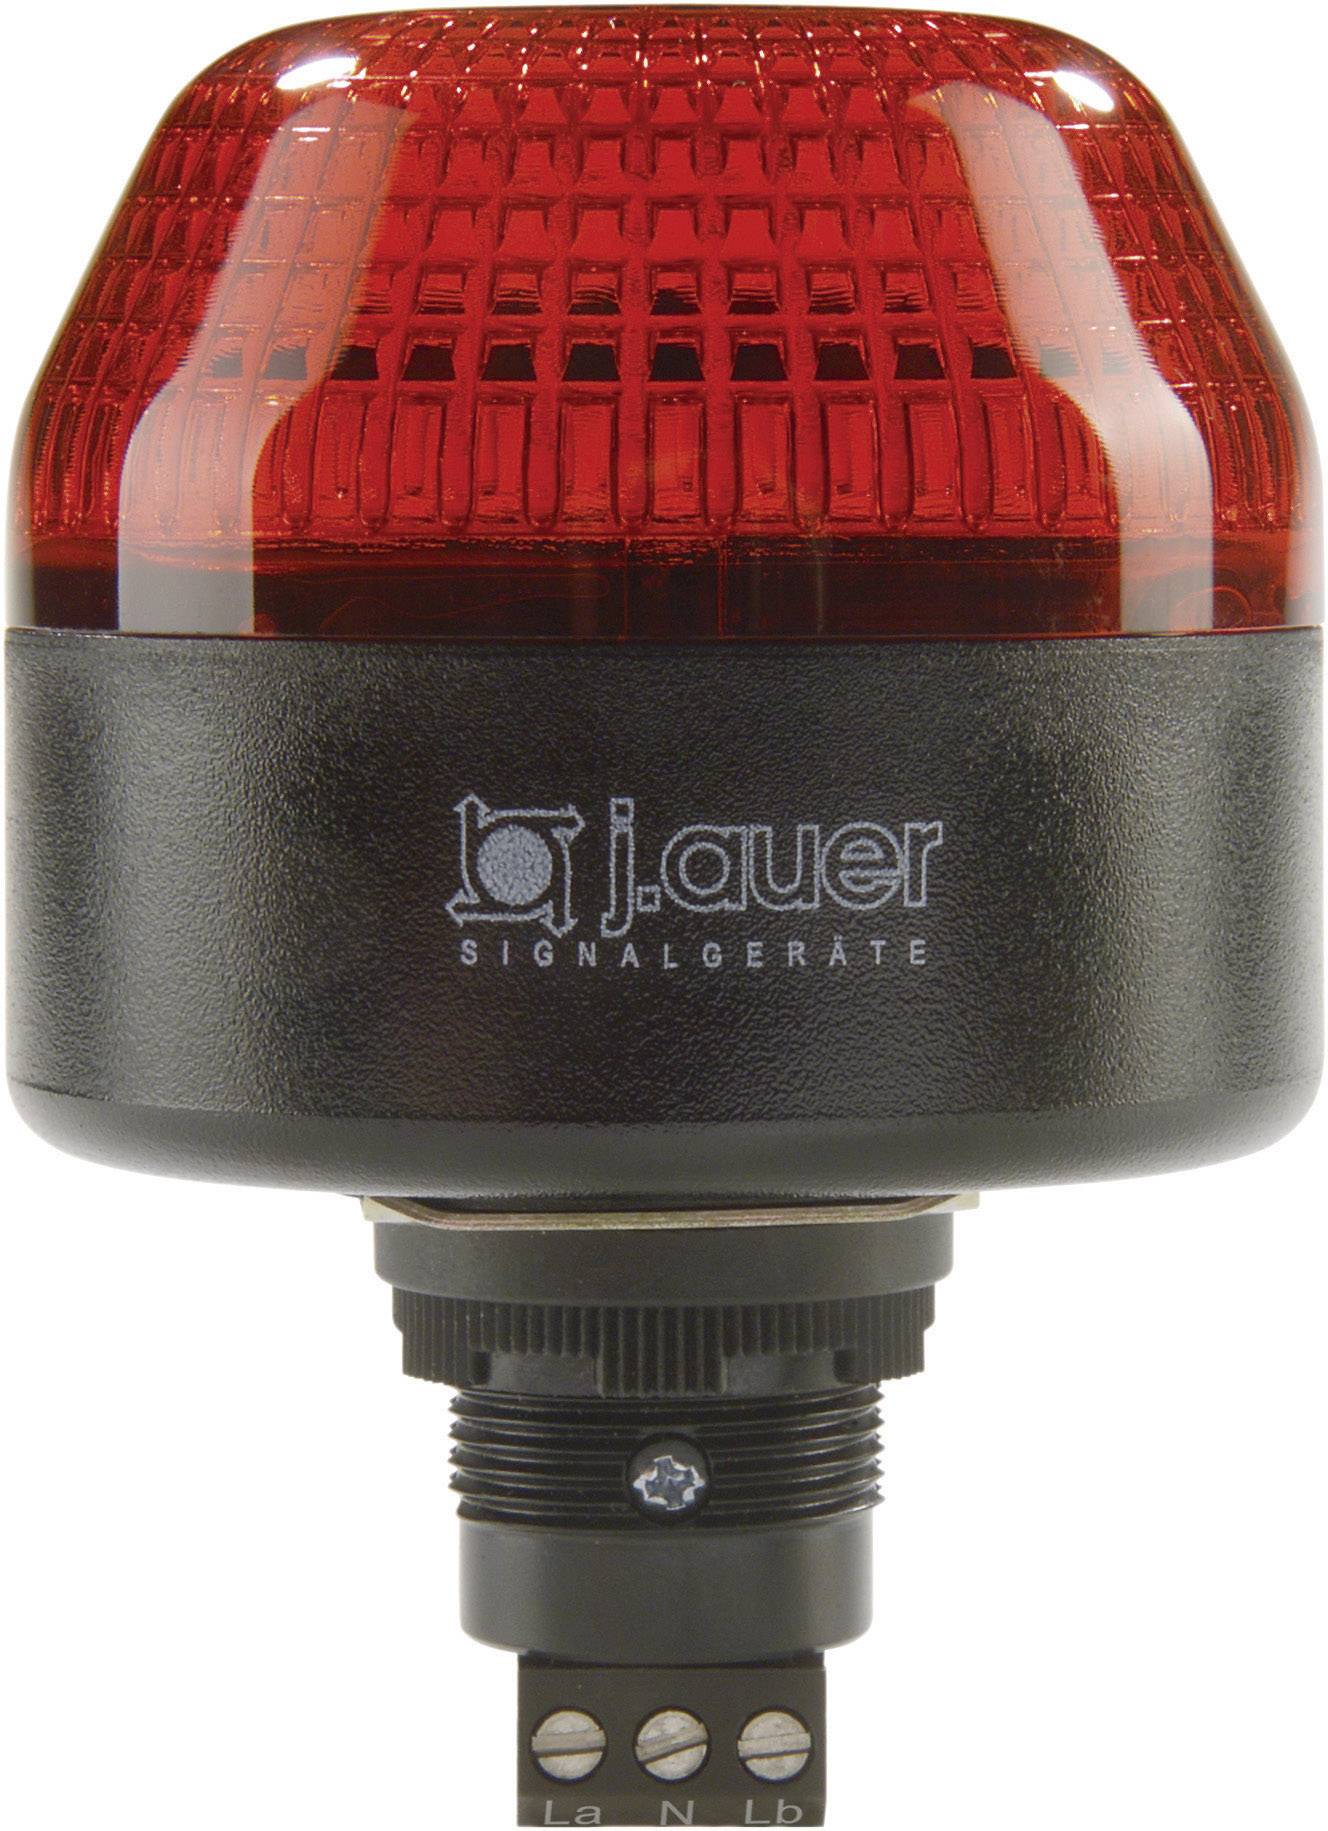 AUER SIGNAL Signalleuchte LED Auer Signalgeräte ICL Rot Rot Blitzlicht 24 V/DC, 24 V/AC